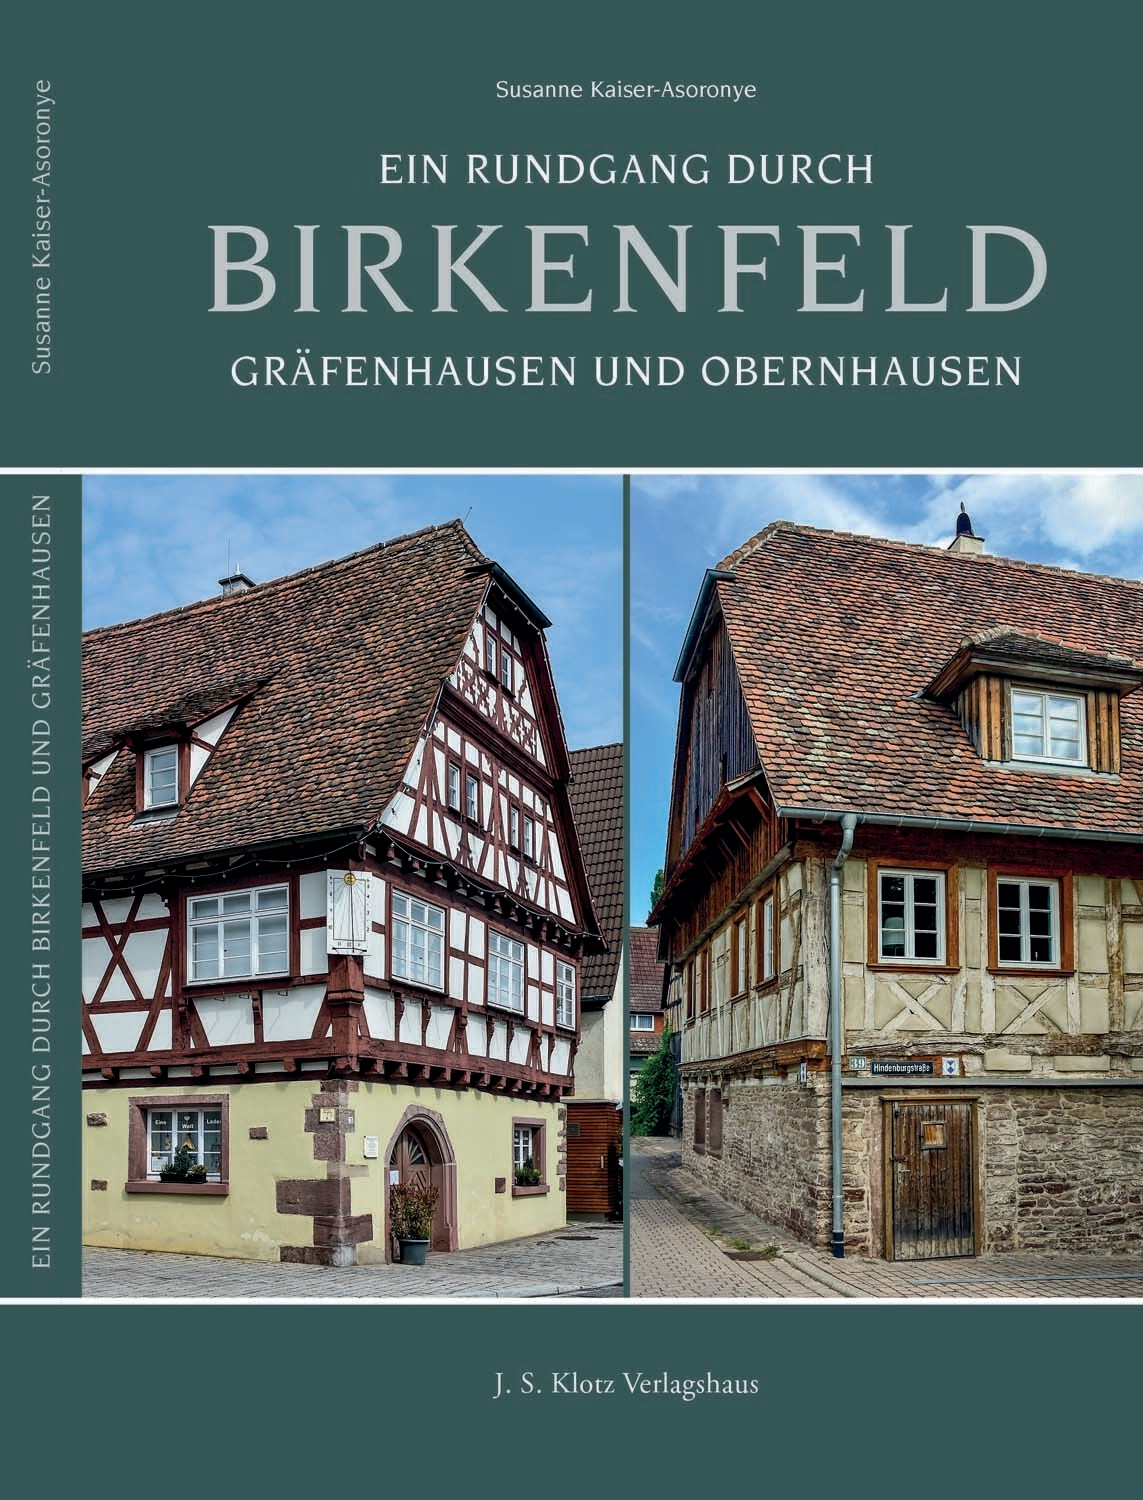 Ein Rundgang durch Birkenfeld, Gräfenhausen und Obernhausen